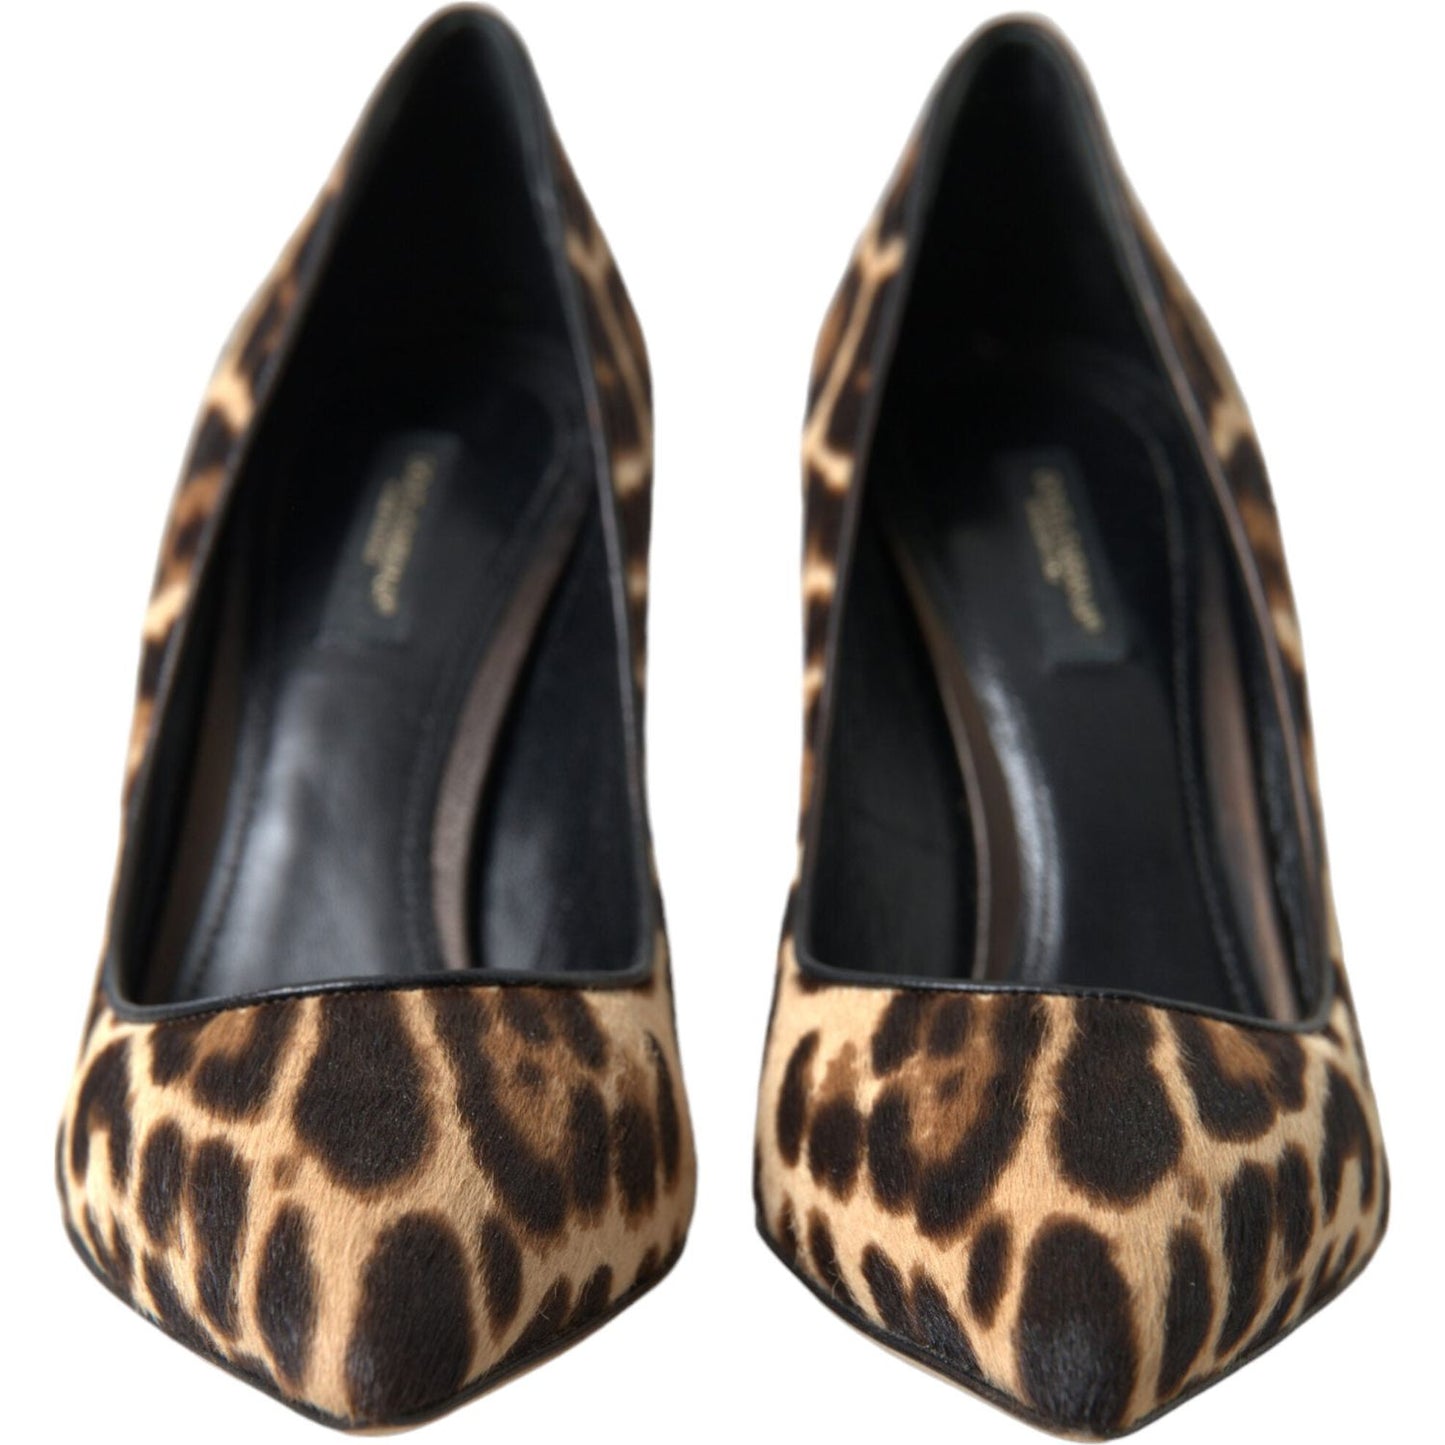 Dolce & GabbanaExquisite Leopard Print Stiletto PumpsMcRichard Designer Brands£379.00